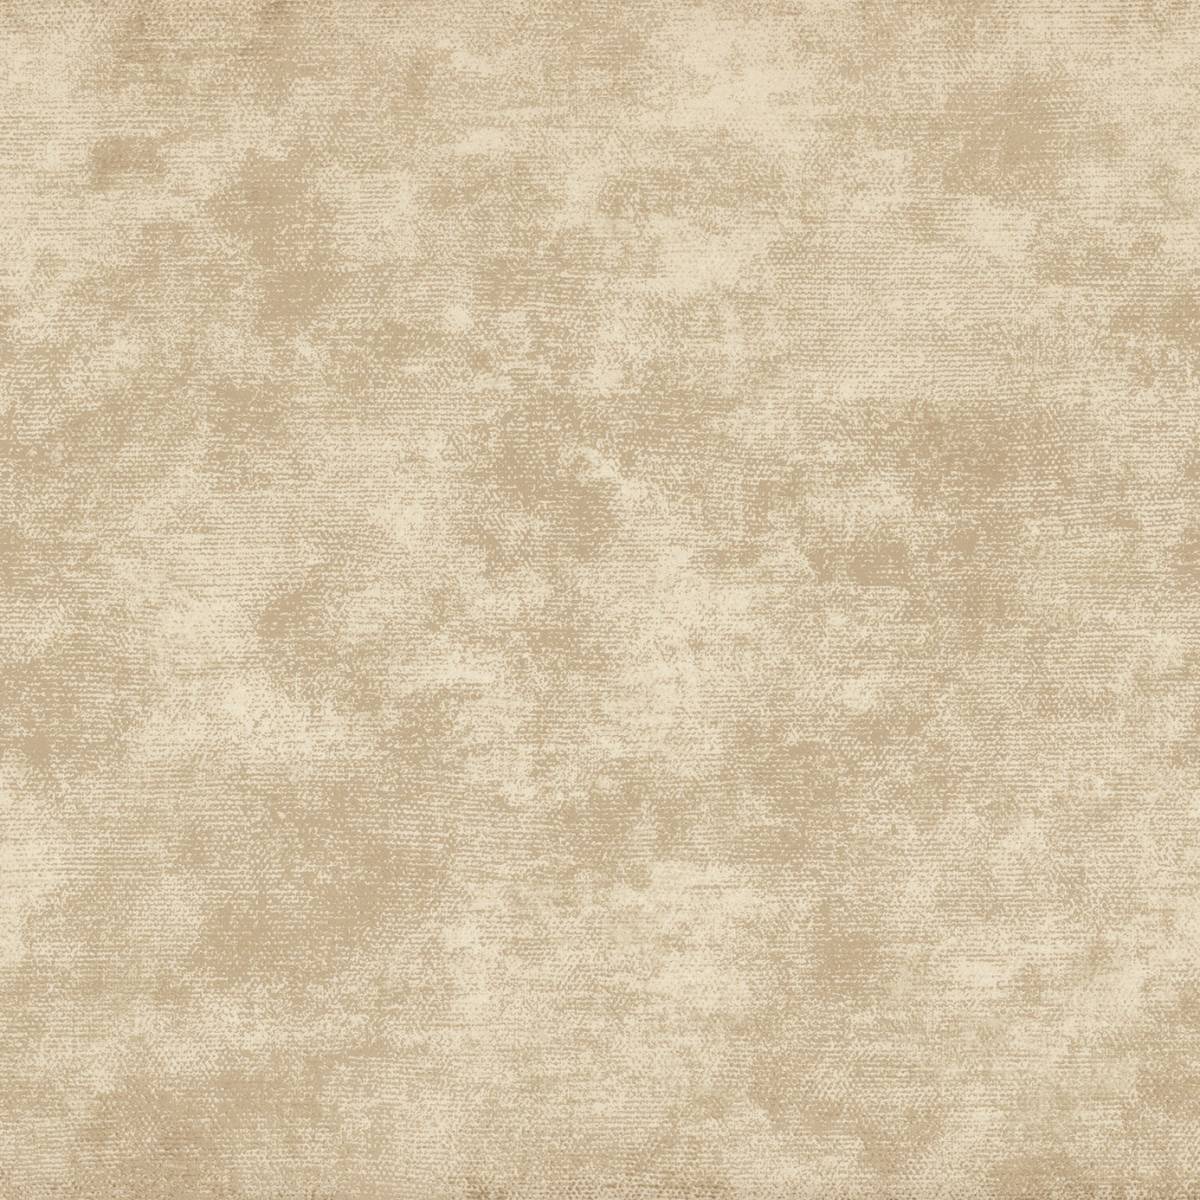 石膏壁紙,褐色,ベージュ,フローリング,床,タイル